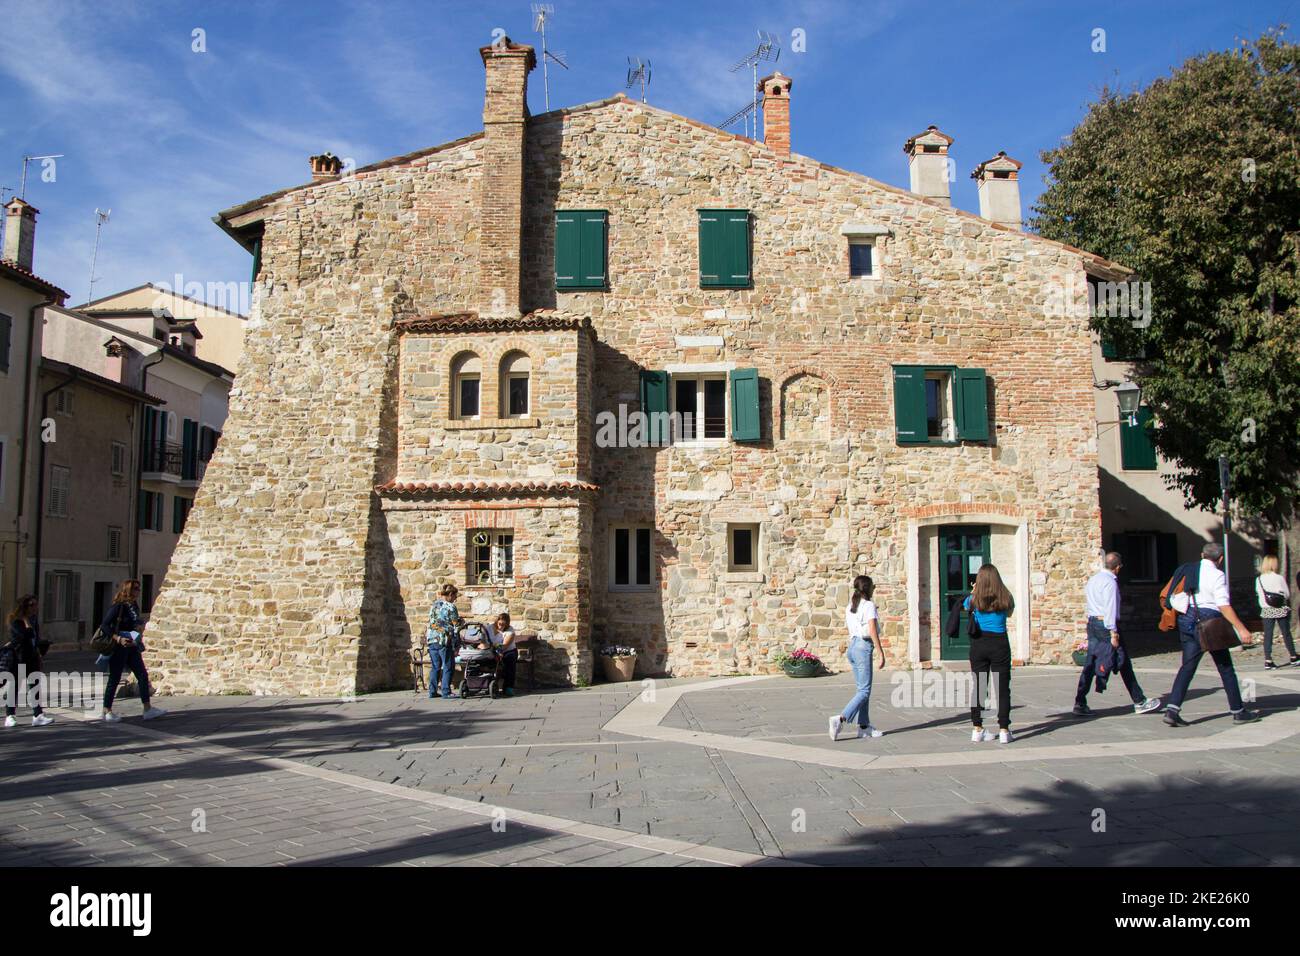 Das Haus der Musik in Grado, Italien (Comune Di Grado Casa della Musica) befindet sich an der Piazza Biagio Marin und ist eines der ältesten Gebäude in Grado Stockfoto